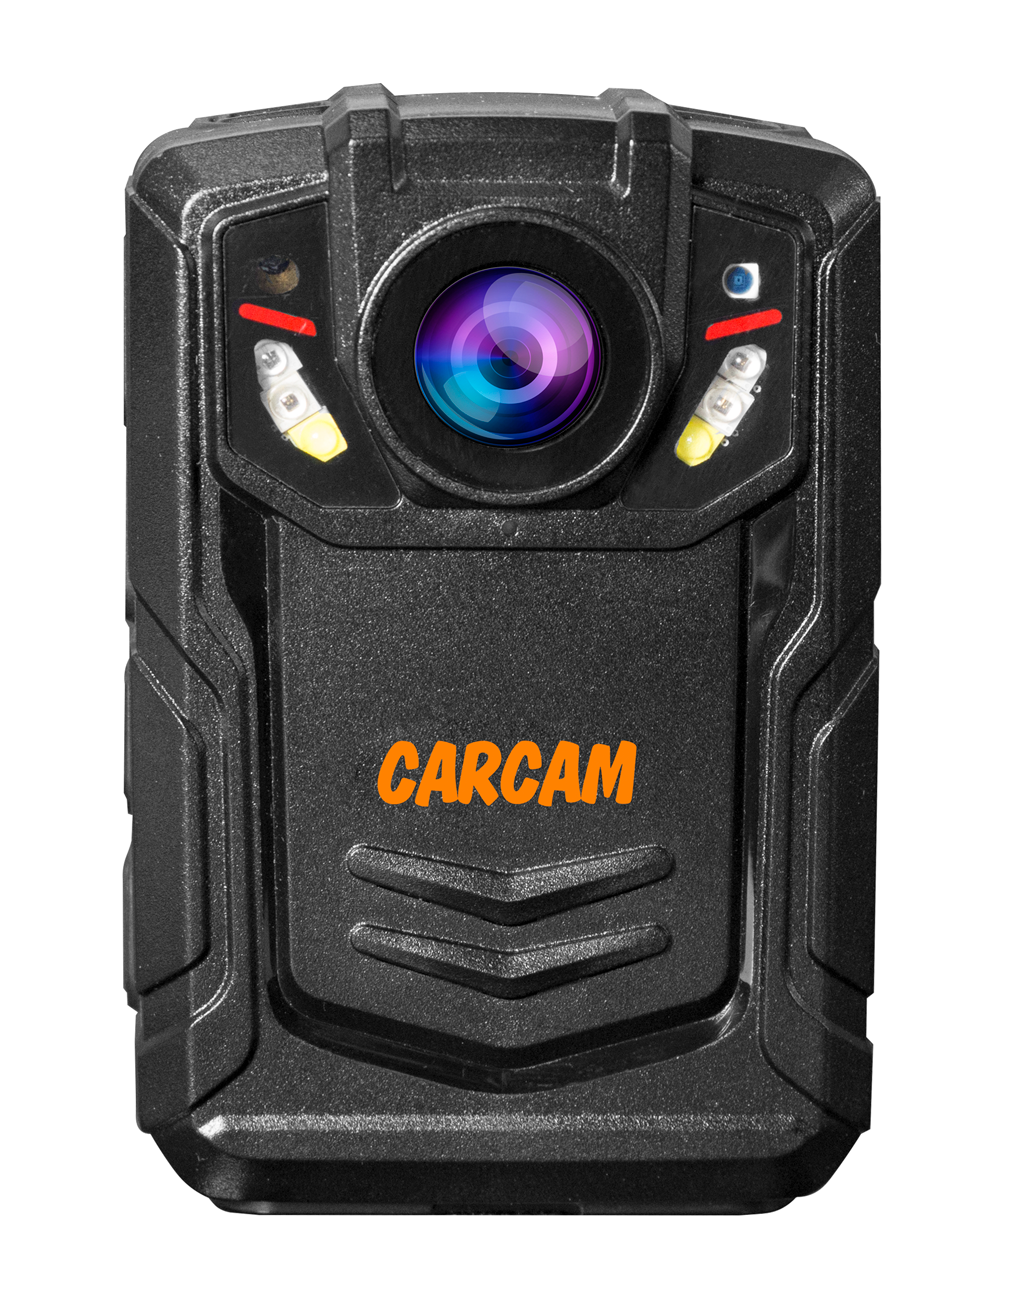 Персональный Quad HD видеорегистратор  CARCAM COMBAT 2S/4G 256Gb персональный quad hd видеорегистратор для работников технических объектов carcam combat 2s prof 256gb